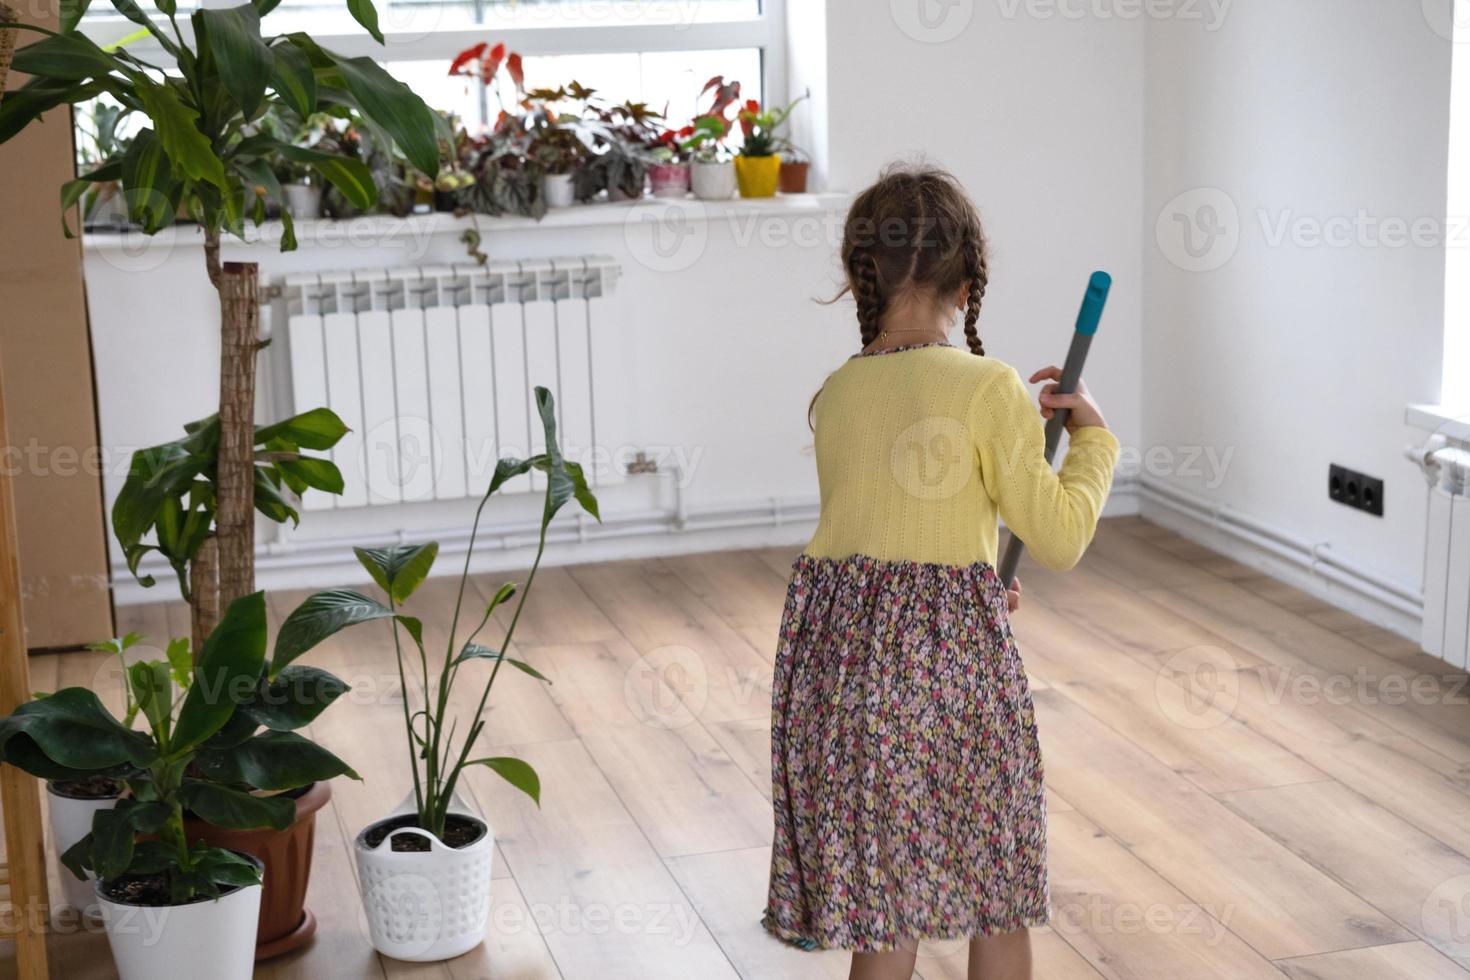 ein Mädchen tanzt mit einem Wischmopp, um den Boden in einem neuen Haus zu reinigen - allgemeine Reinigung in einem leeren Raum, Freude am Bewegen, Hilfe bei der Hausarbeit foto